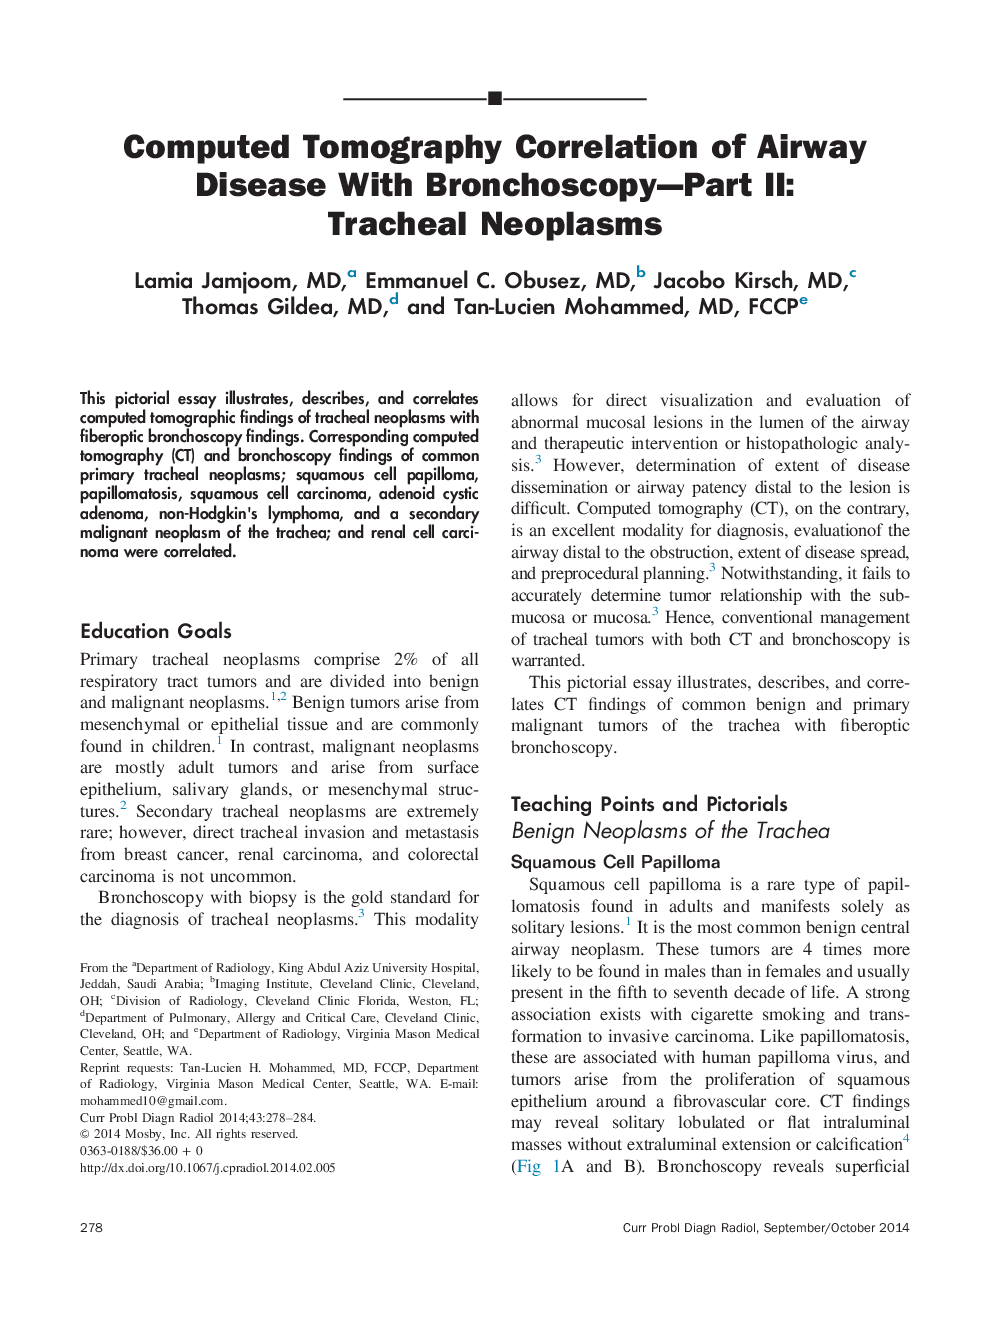 همبستگی کامپیوتری توموگرافی با بیماری برونکوسکوپی قسمت دوم: نئوپلاسم های تراشه 